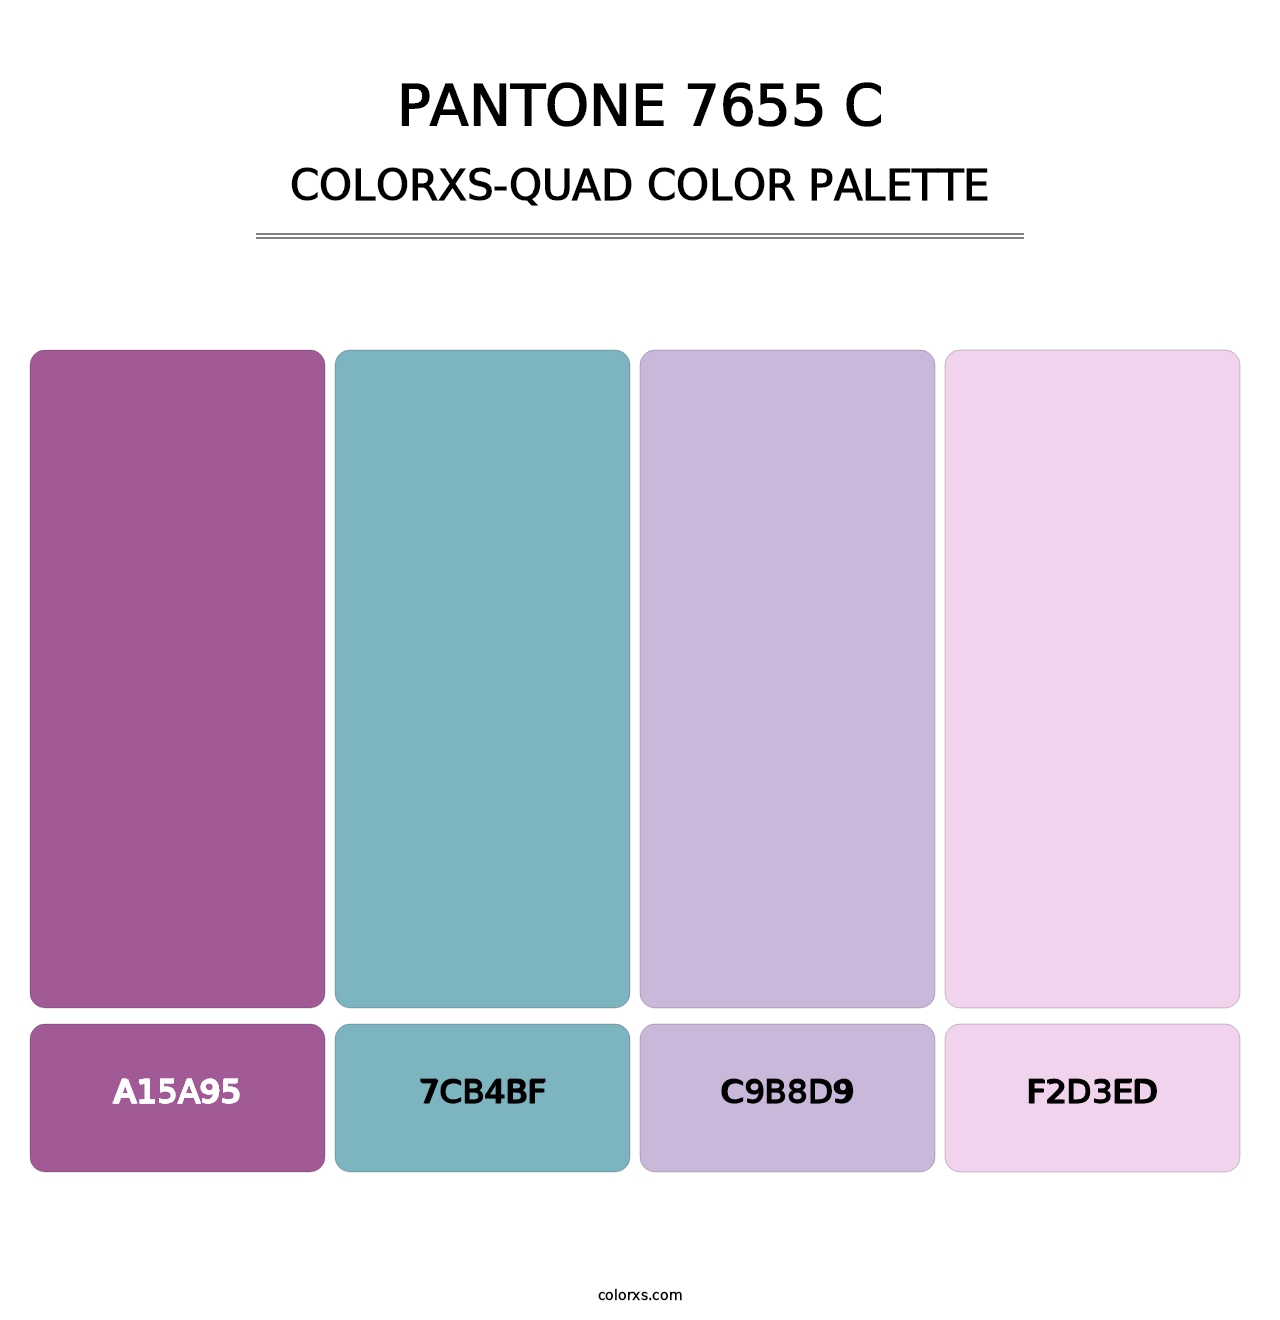 PANTONE 7655 C - Colorxs Quad Palette